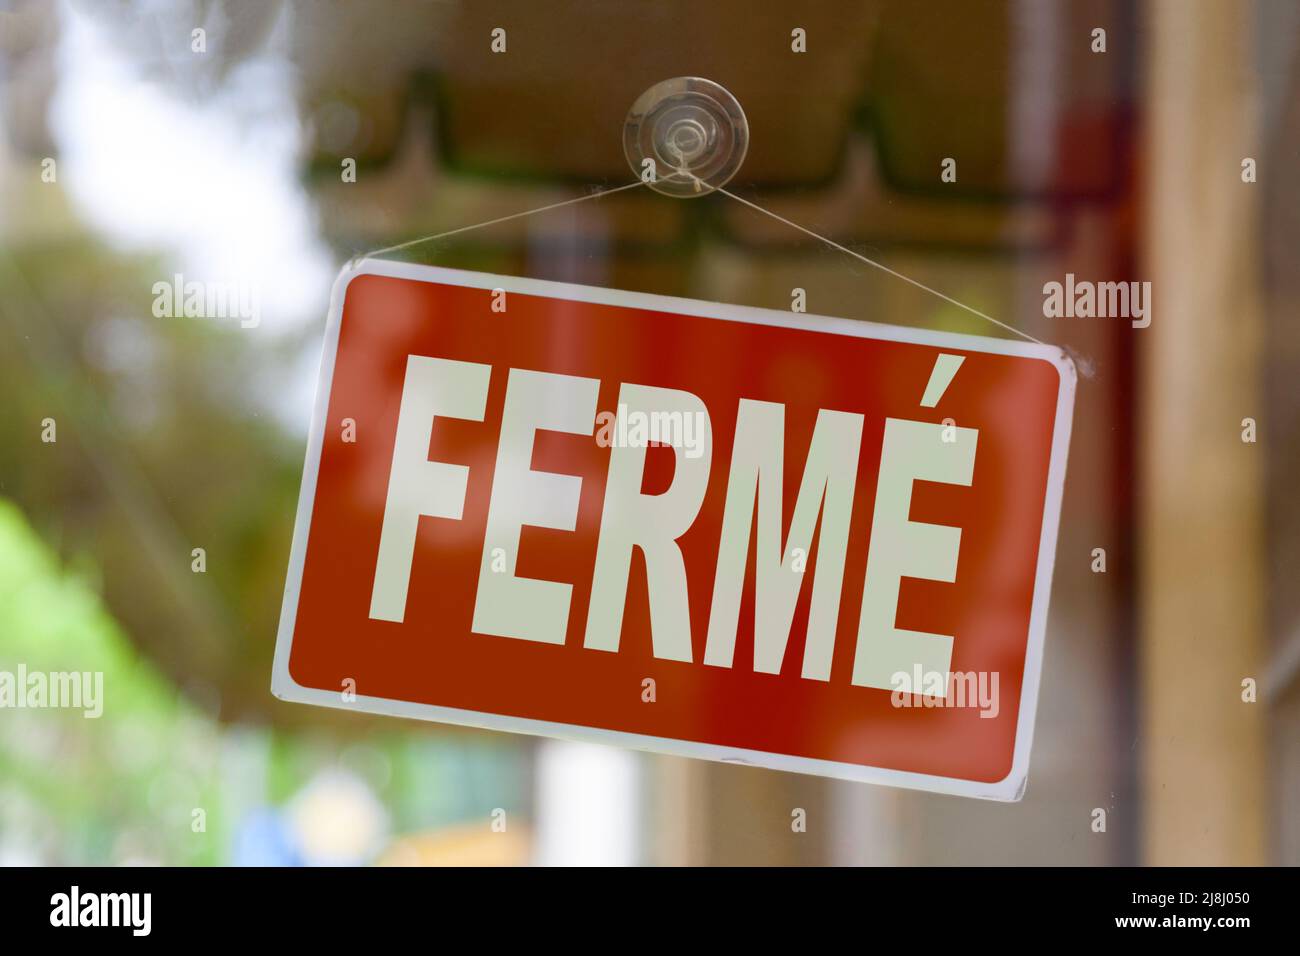 Primo piano su un segno rosso nella finestra di un negozio che visualizza il messaggio in francese - Fermé - significato in inglese - chiuso -. Foto Stock